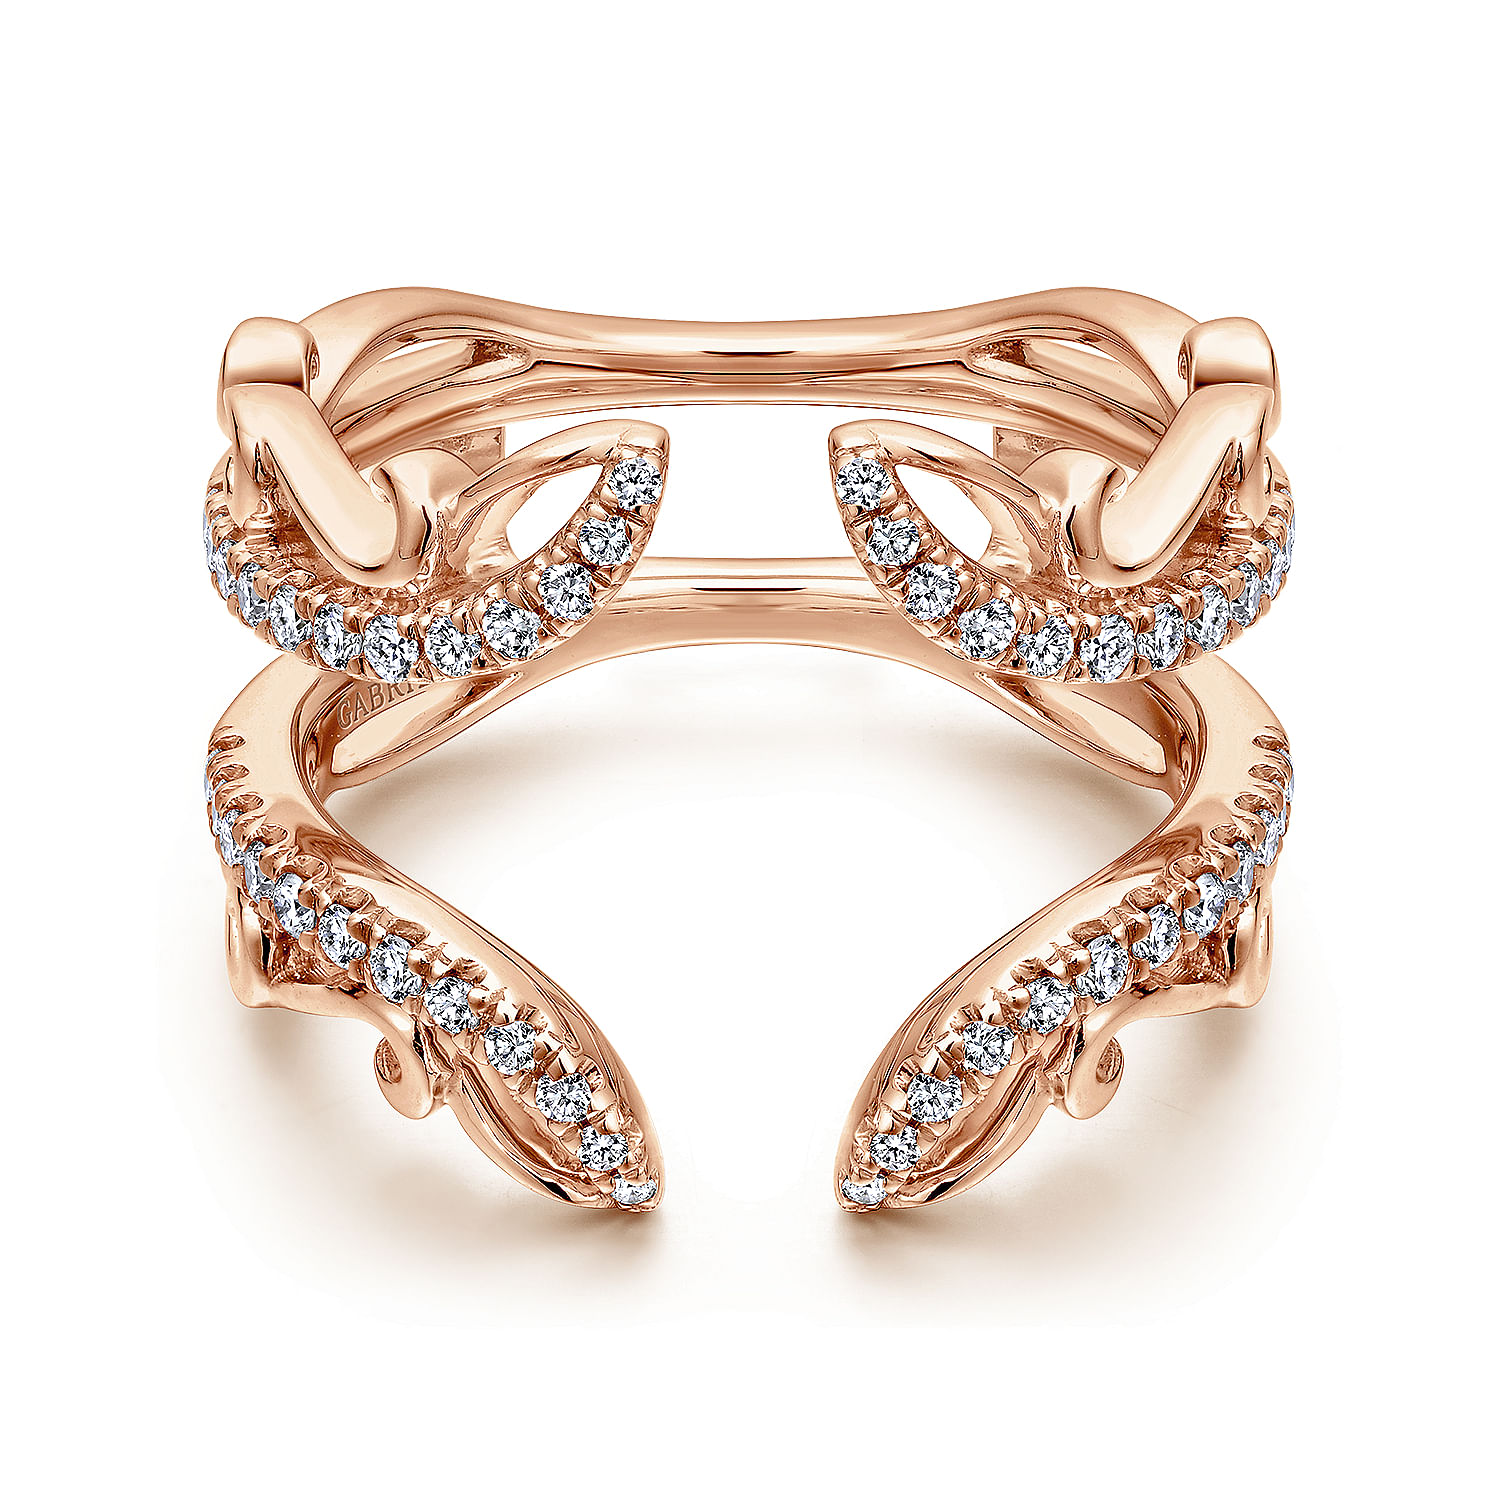 14K Rose Gold French Pavé Set Diamond Ring Enhancer